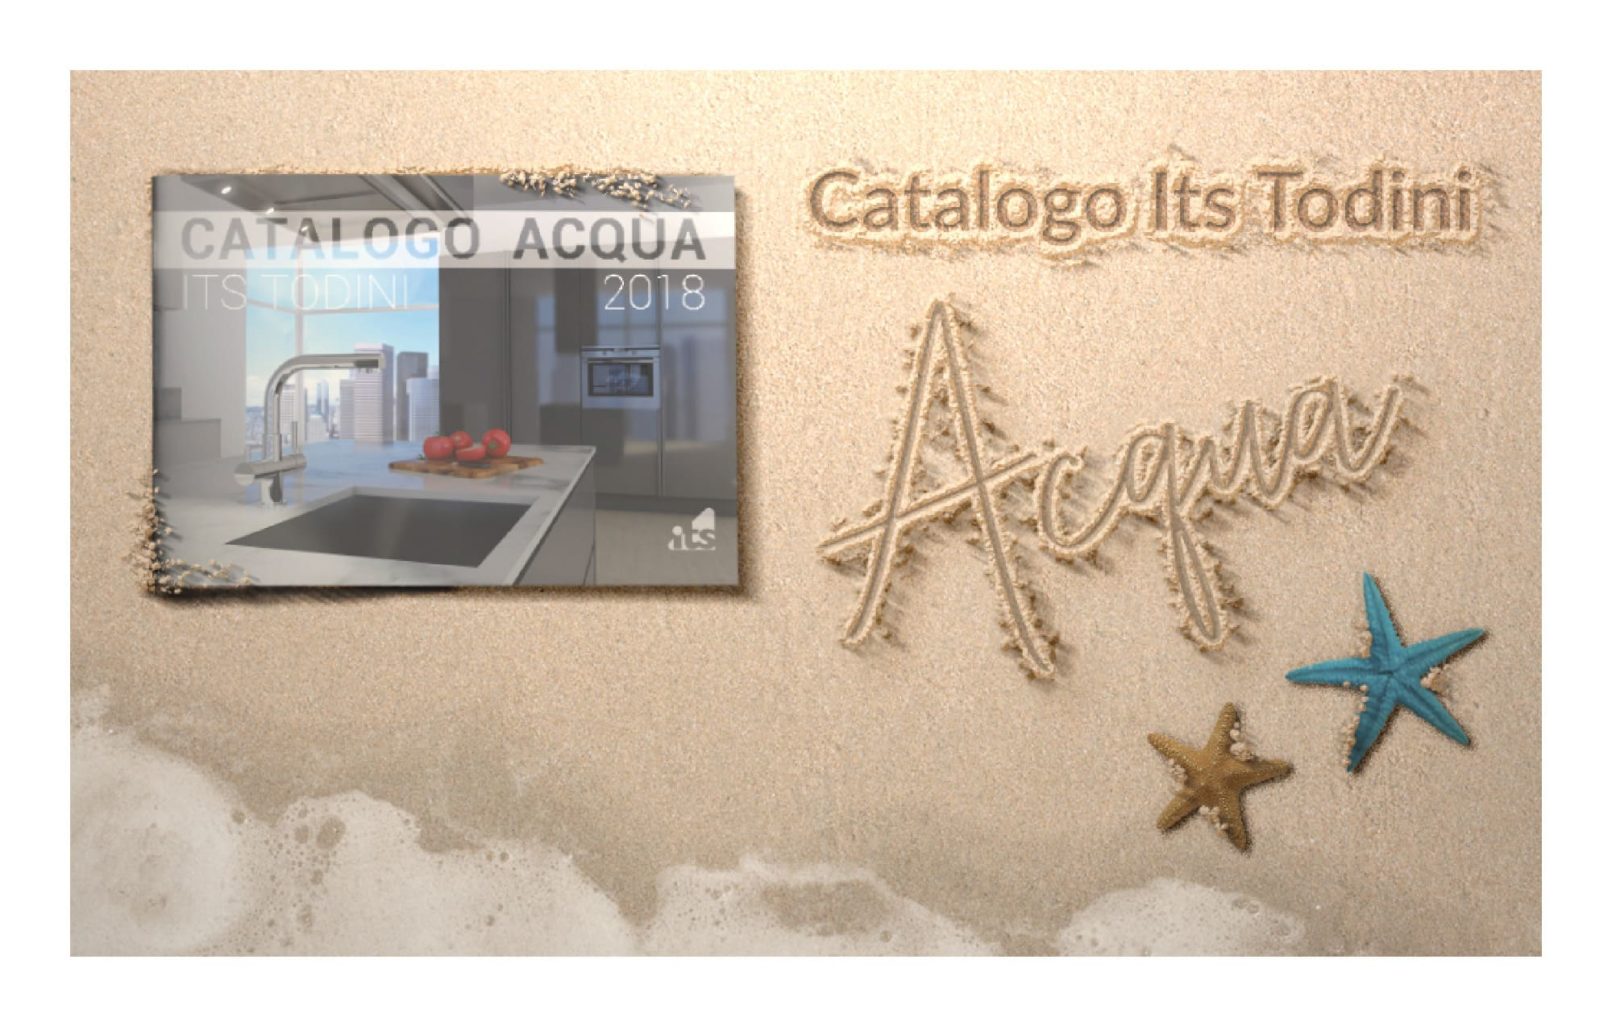 catalogo-acqua-its-todini